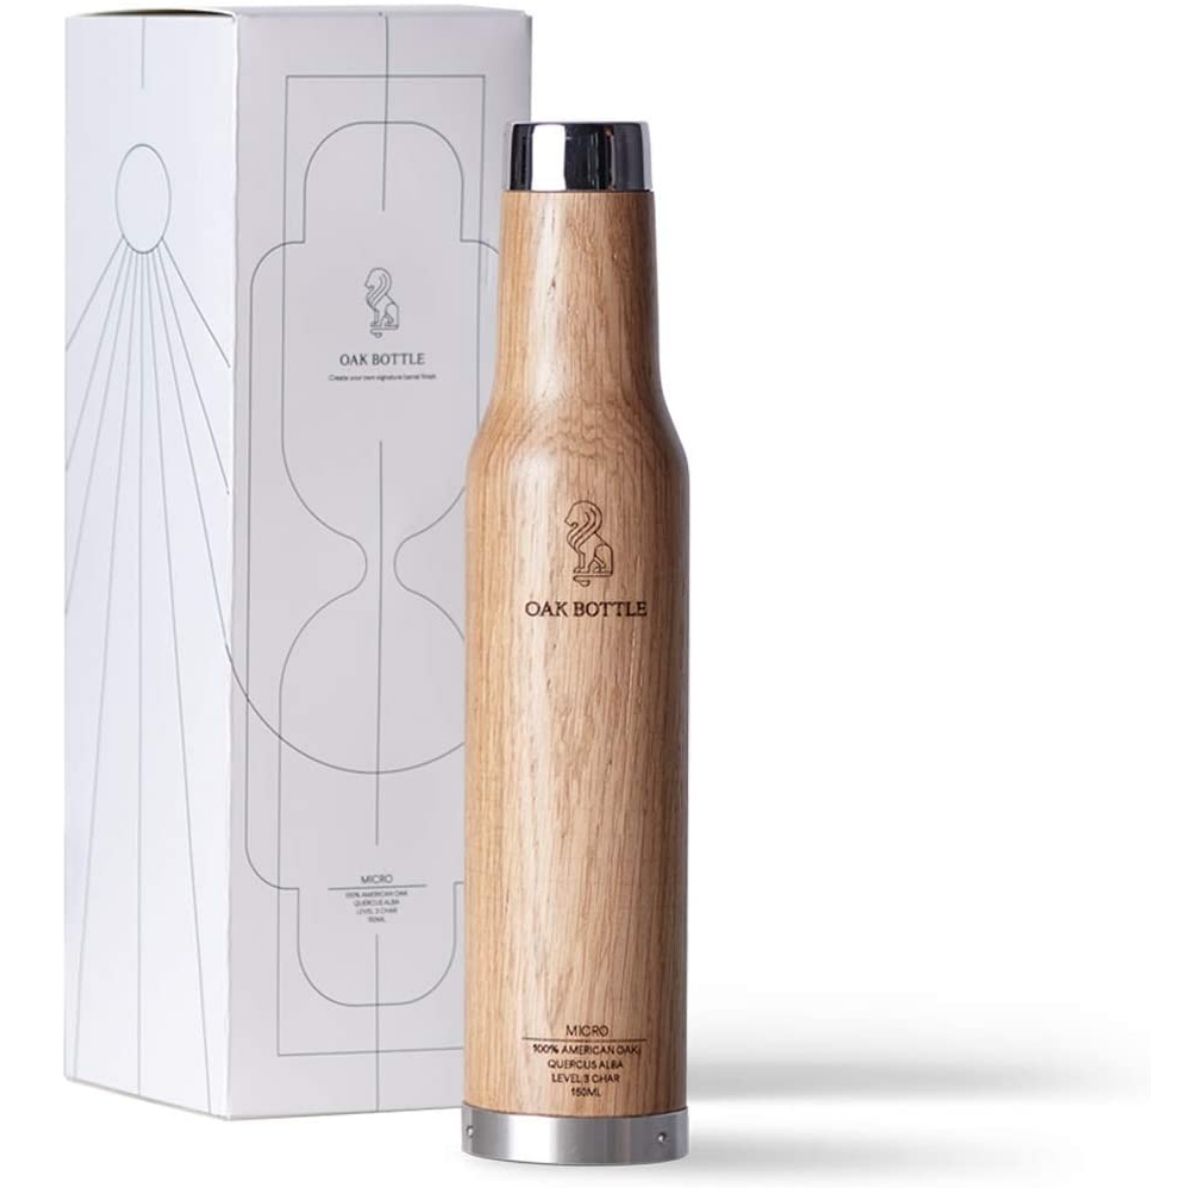 The Best Gifts for Wine Lovers Option: Oak Bottle Micro 100% American Oak Whiskey Barrel